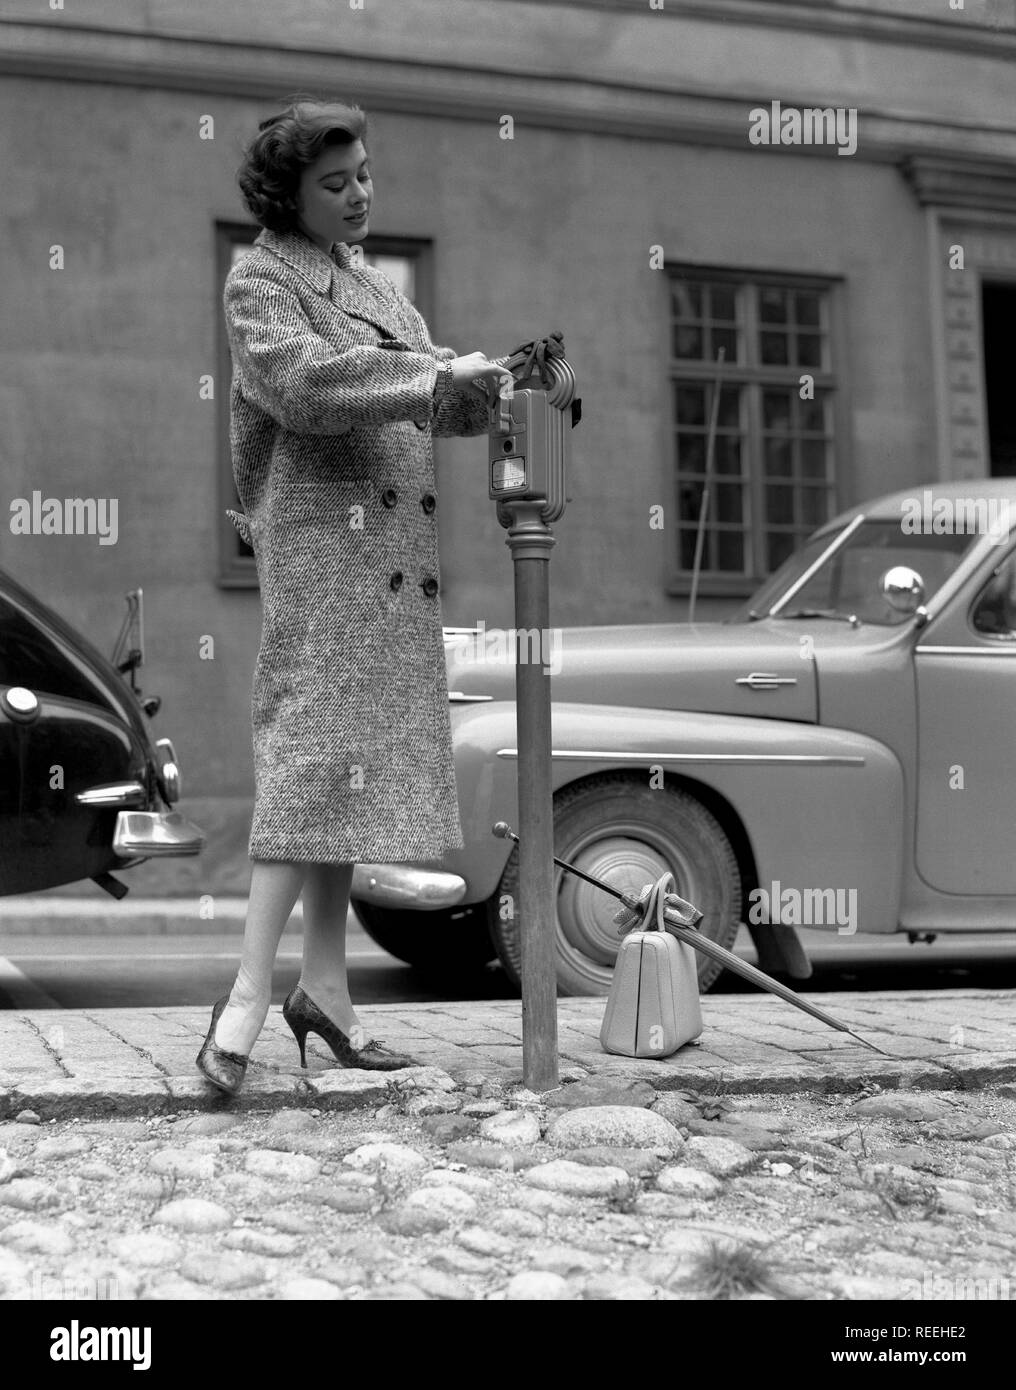 Mode in den 50er Jahren. Eine junge Frau trägt eine typische 50er Jahre Herbst Mode Mantel. Sie zahlt für Ihr Ticket in die parkuhr in einer Straße. Schweden 1950. Foto Kristoffersson Ref321 a-5 Stockfoto